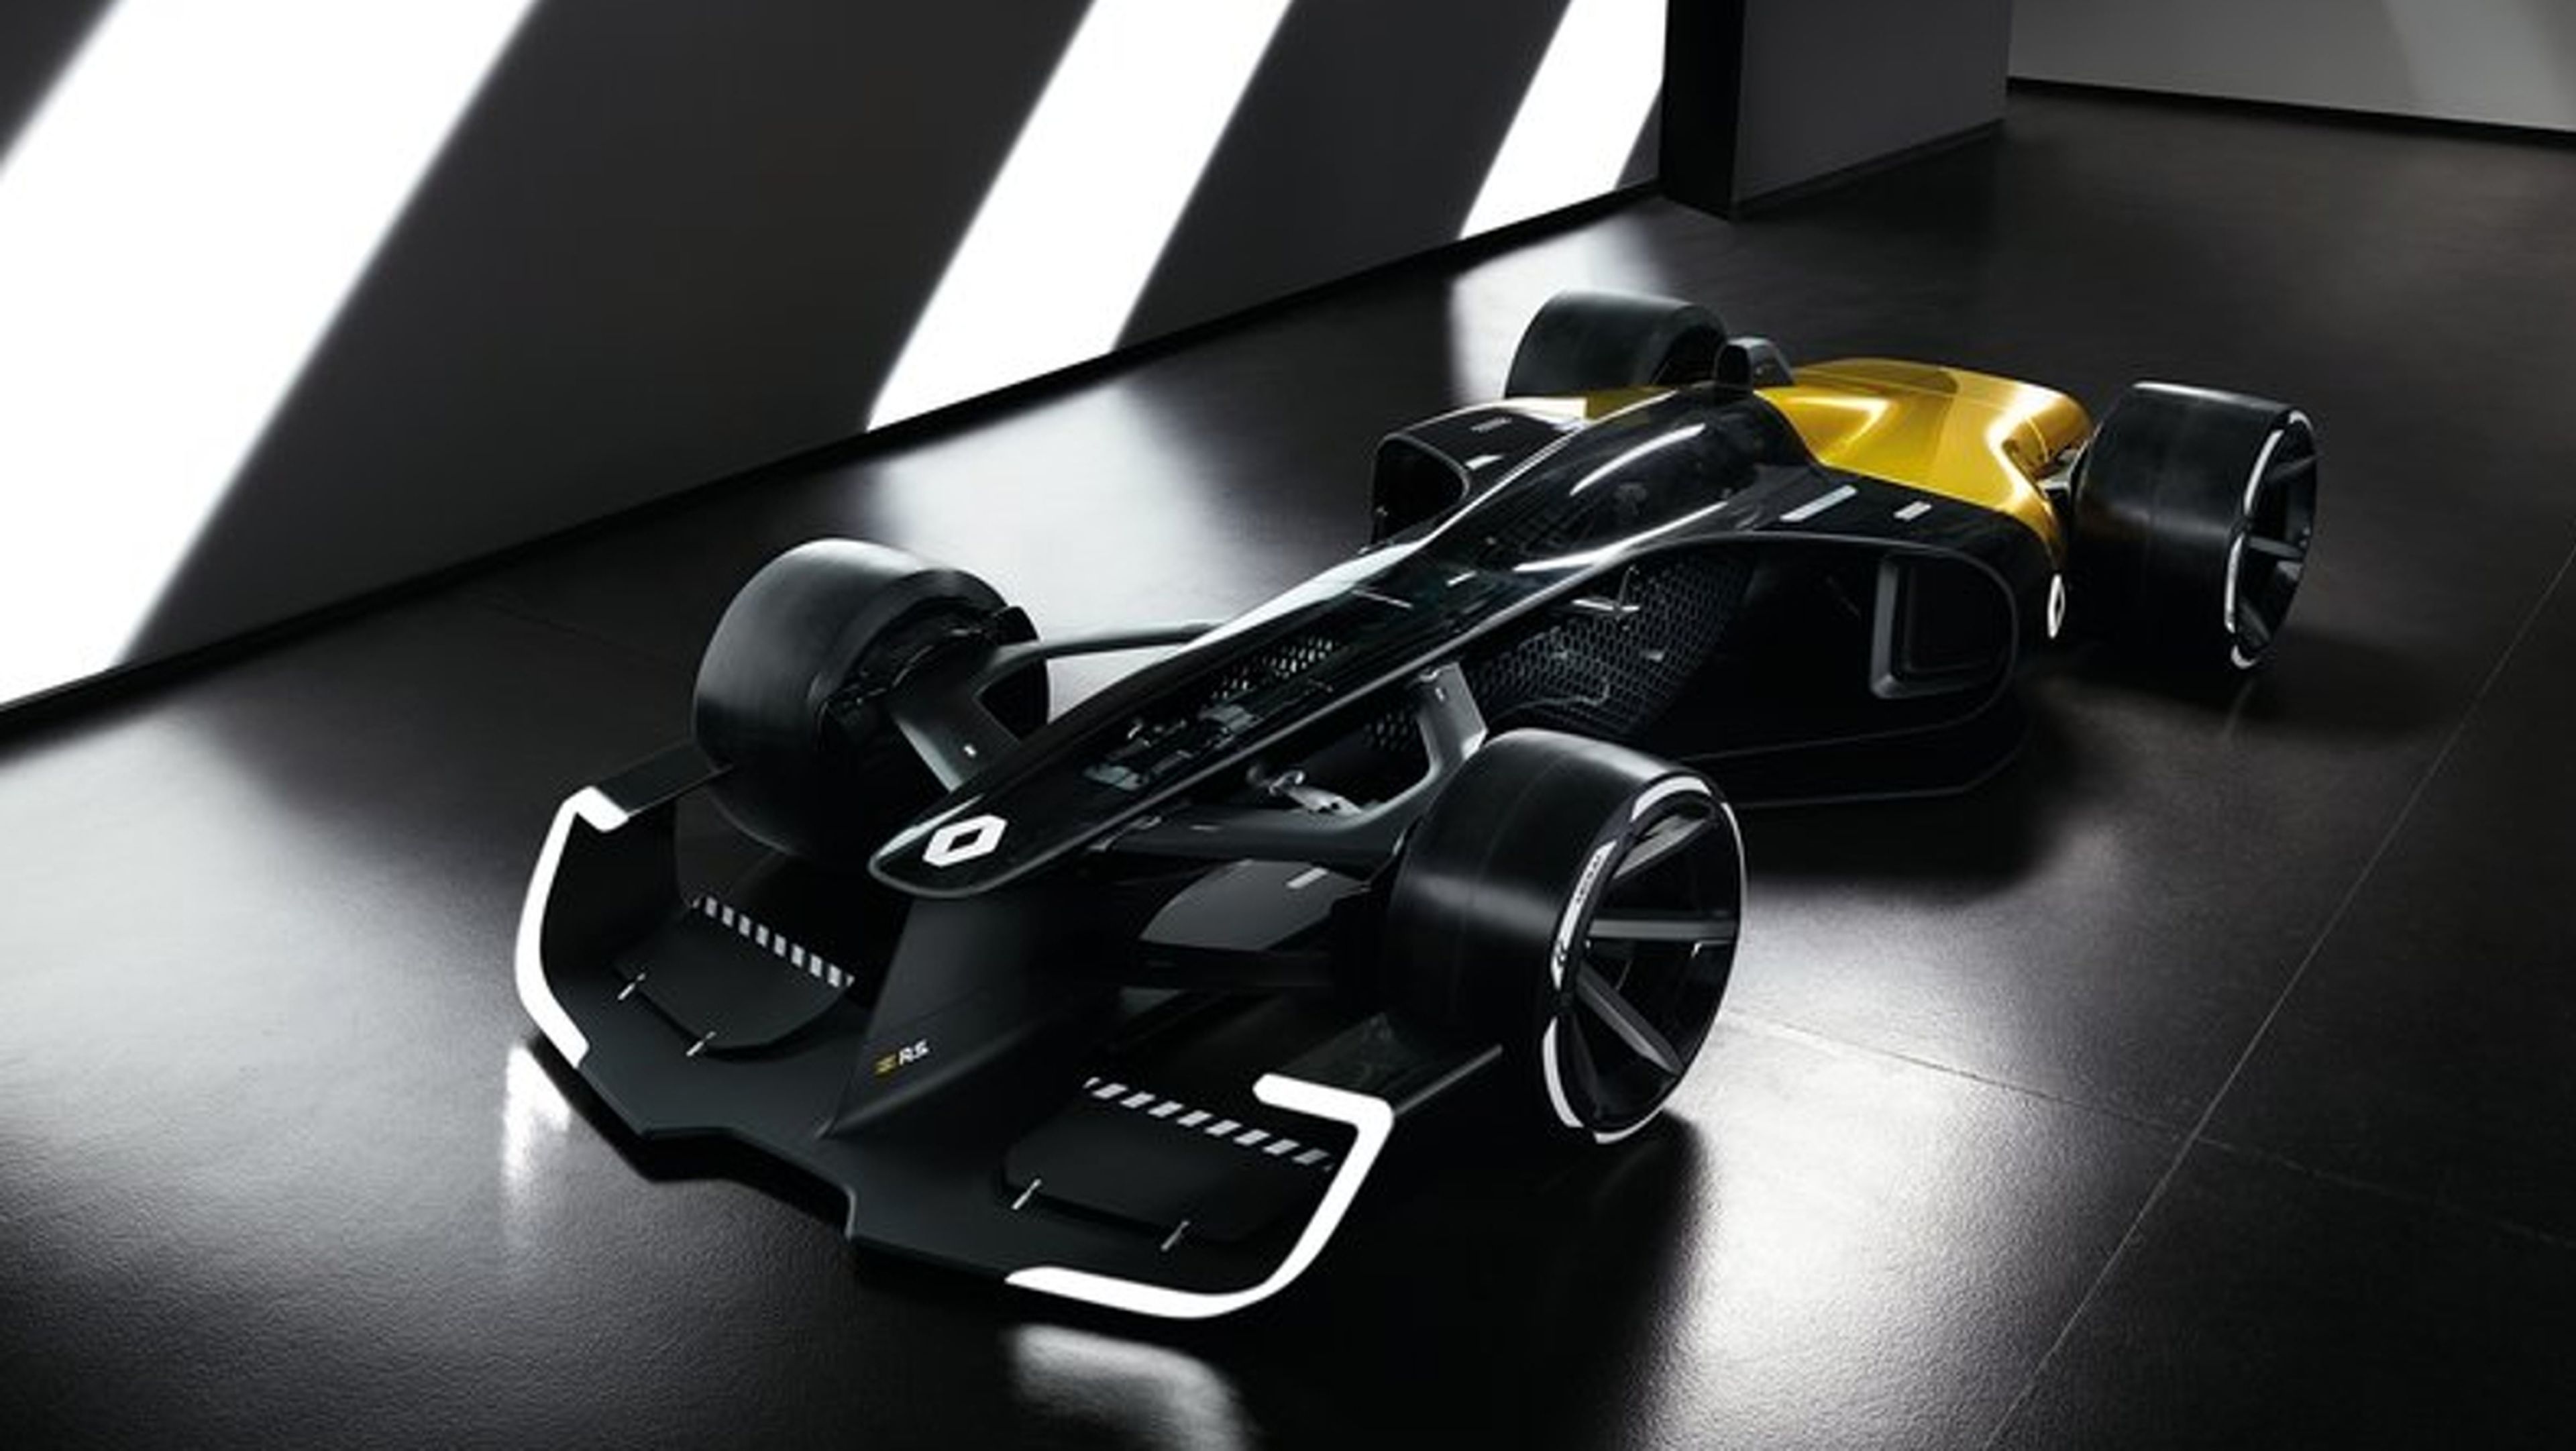 Señoras y señores, con todos ustedes, el RS 2027, el espectacular prototipo de Renault F1